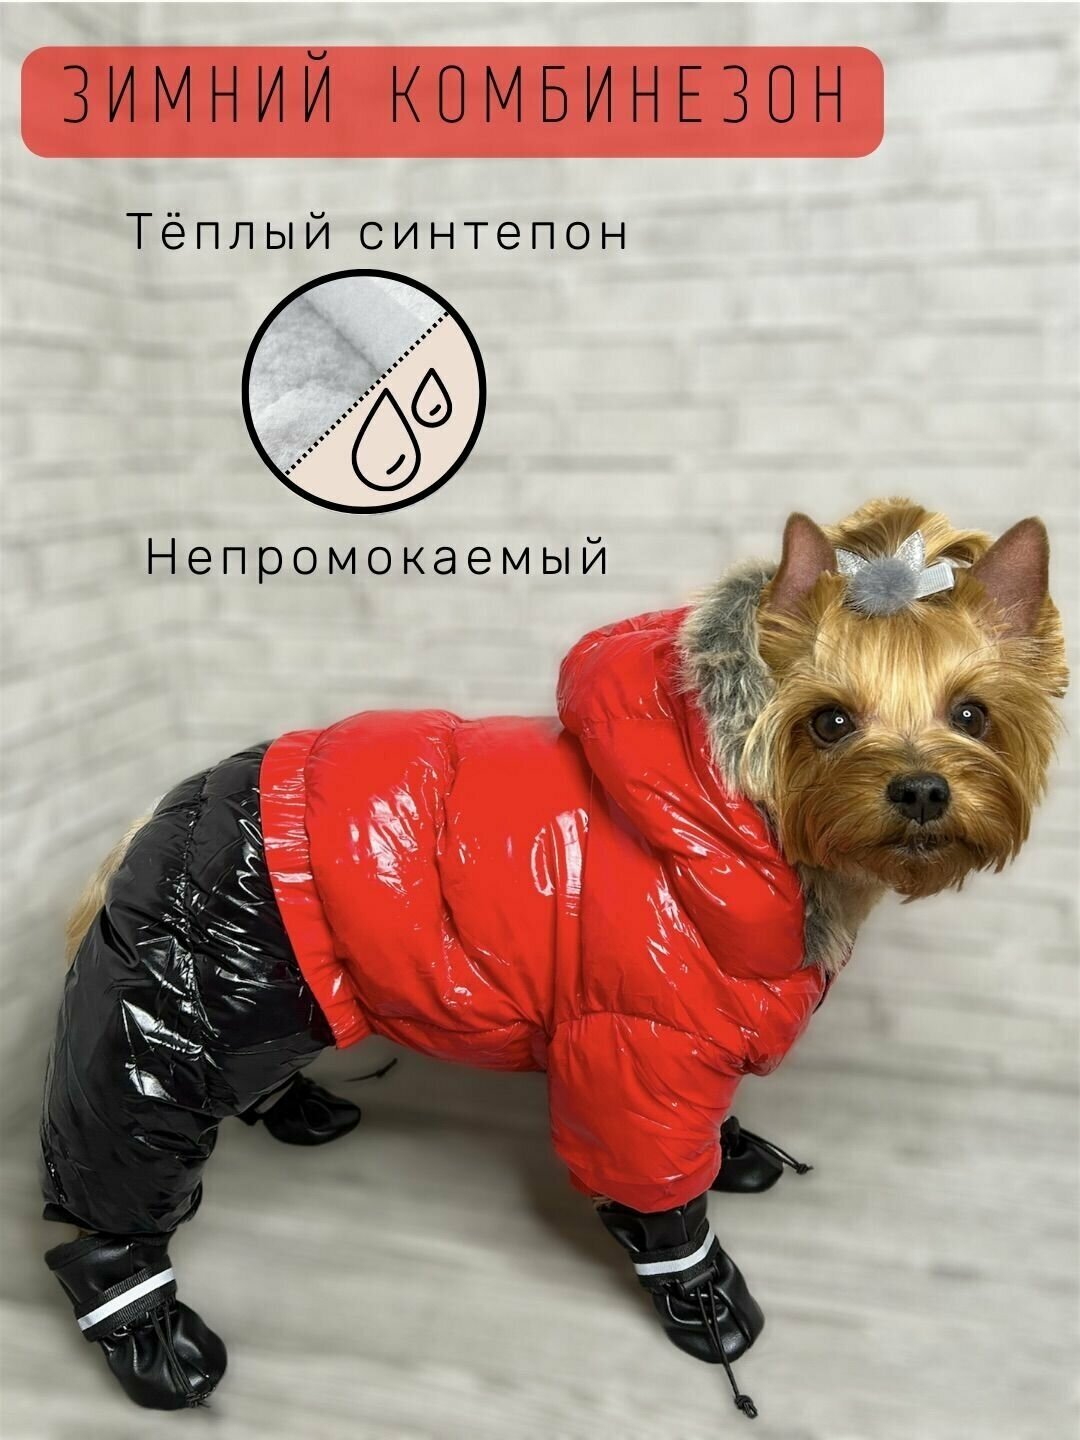 Зимний комбинезон для собак всех пород / Непромокаемый / Плотный синтепон / Размер 18 / Красный